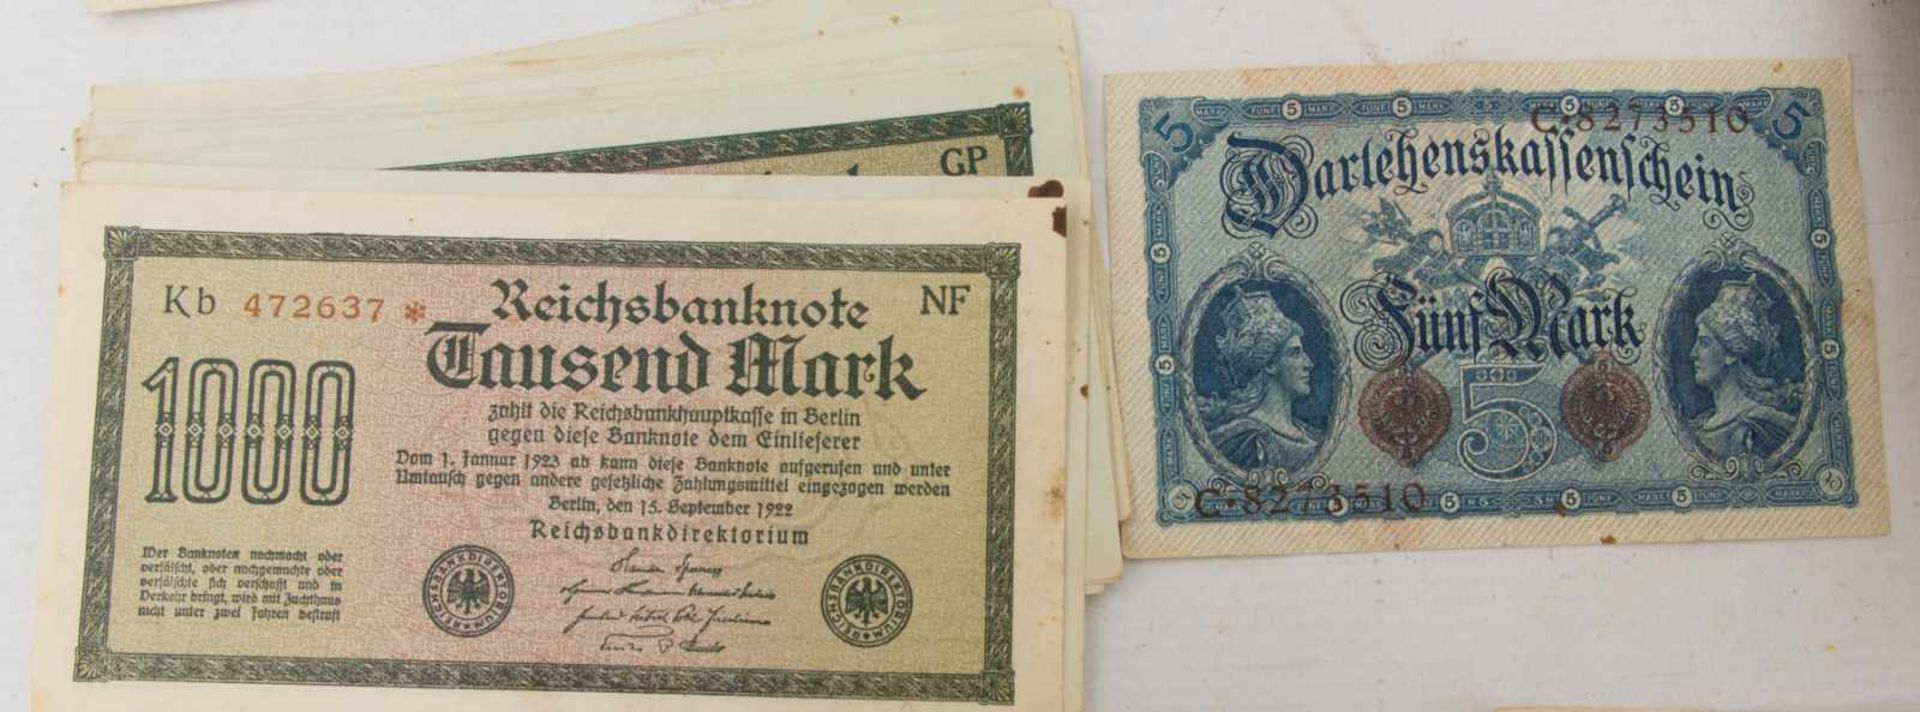 KONVOLUT ALTE BANKNOTEN, bedrucktes Papier, Deutsches Reich um 1910-1925Verschiedene Geldscheine aus - Image 13 of 13